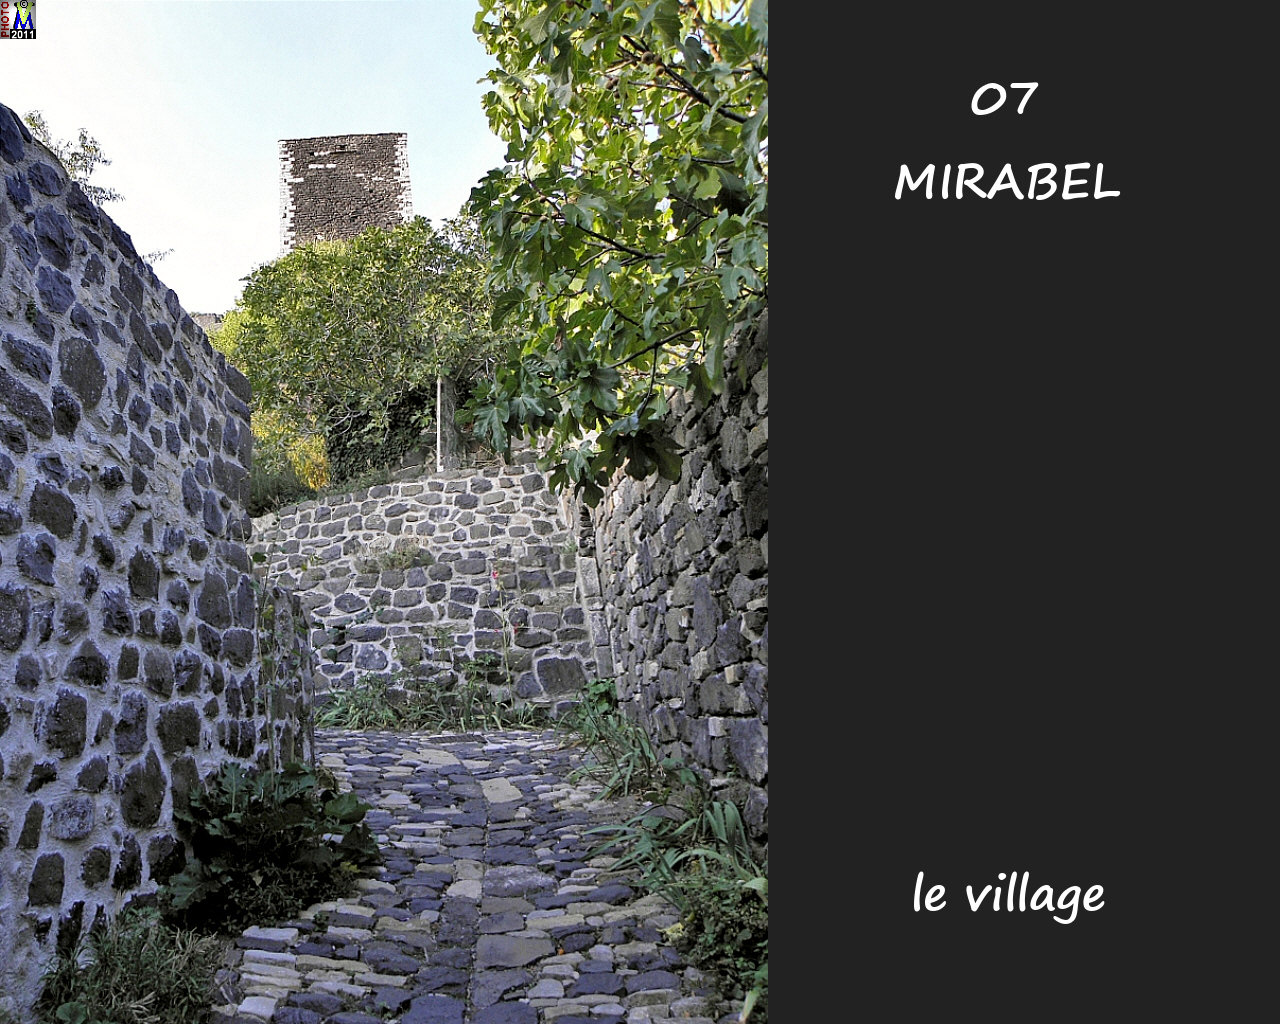 07MIRABEL_village_142.jpg